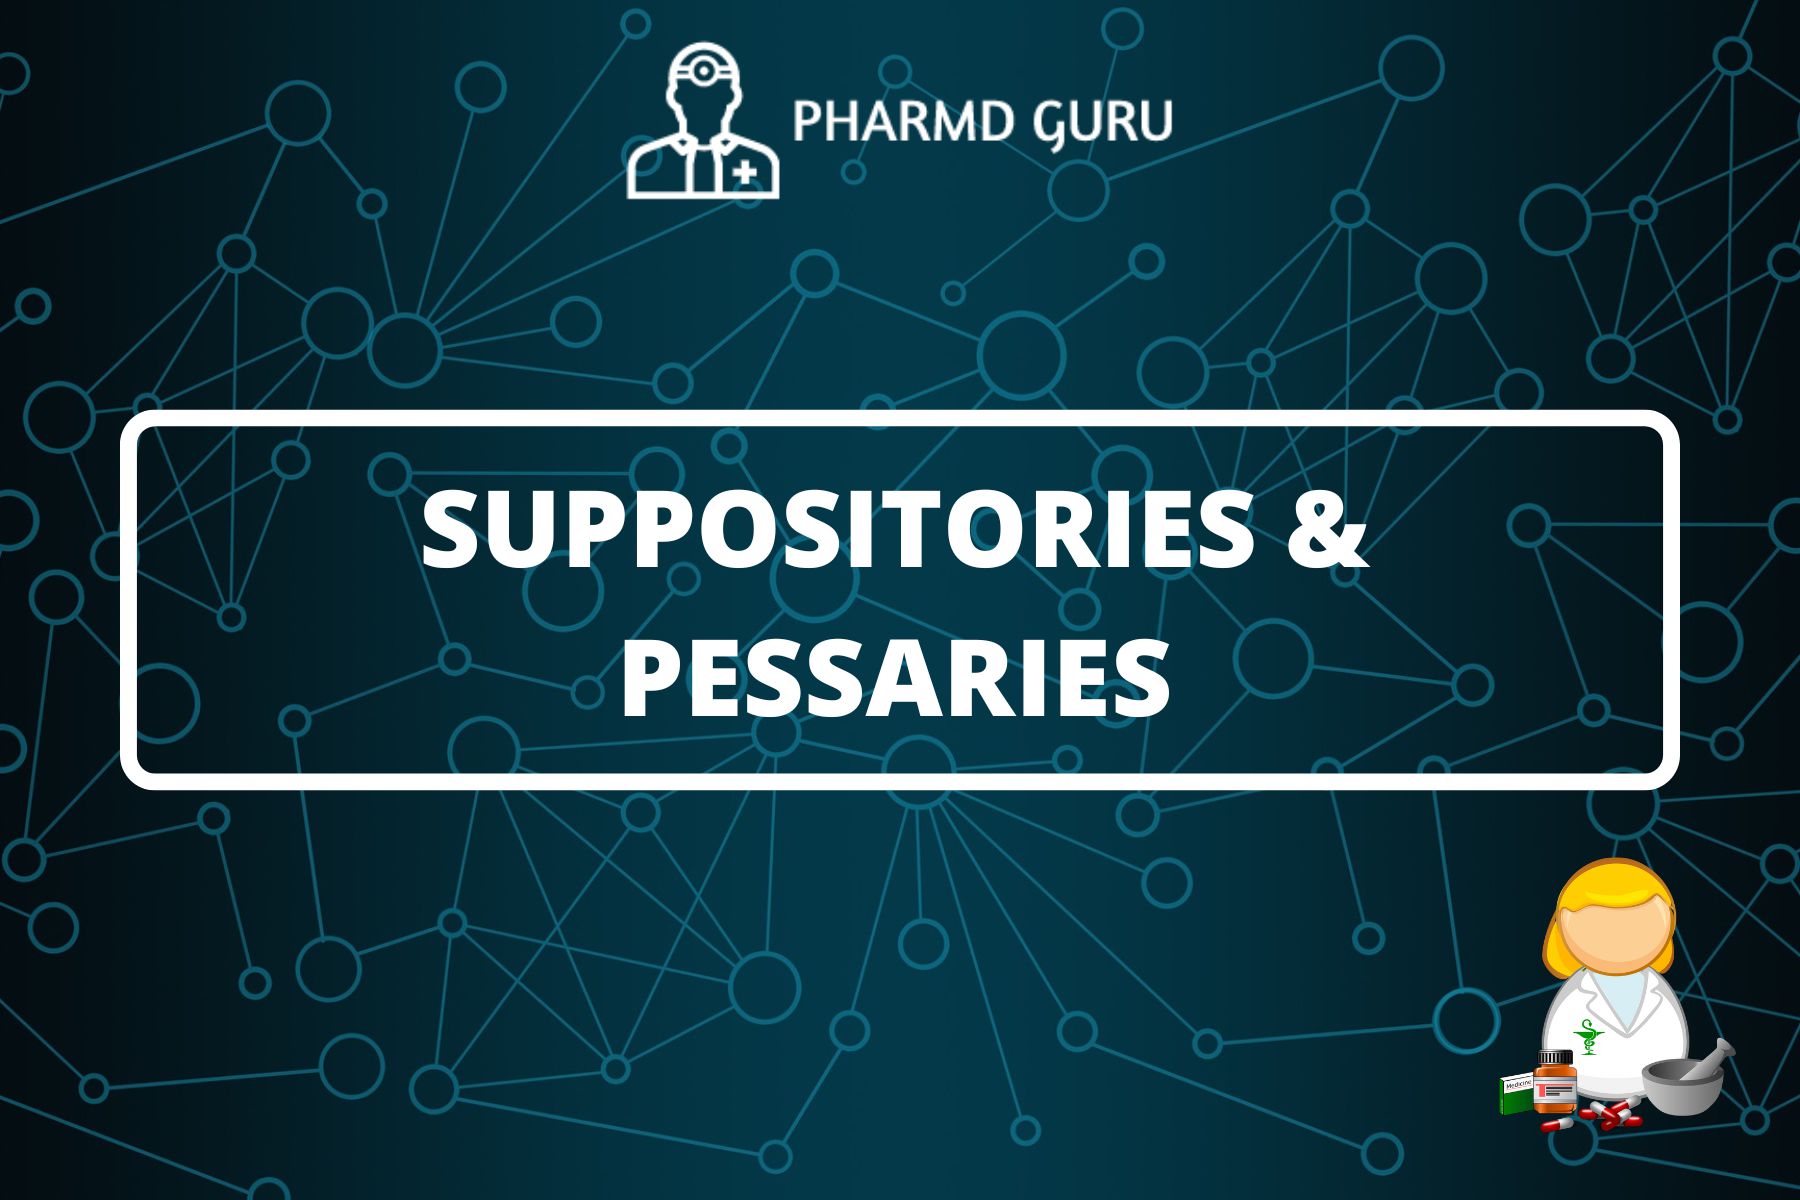 12. SUPPOSITORIES AND PESSARIES - PHARMD GURU